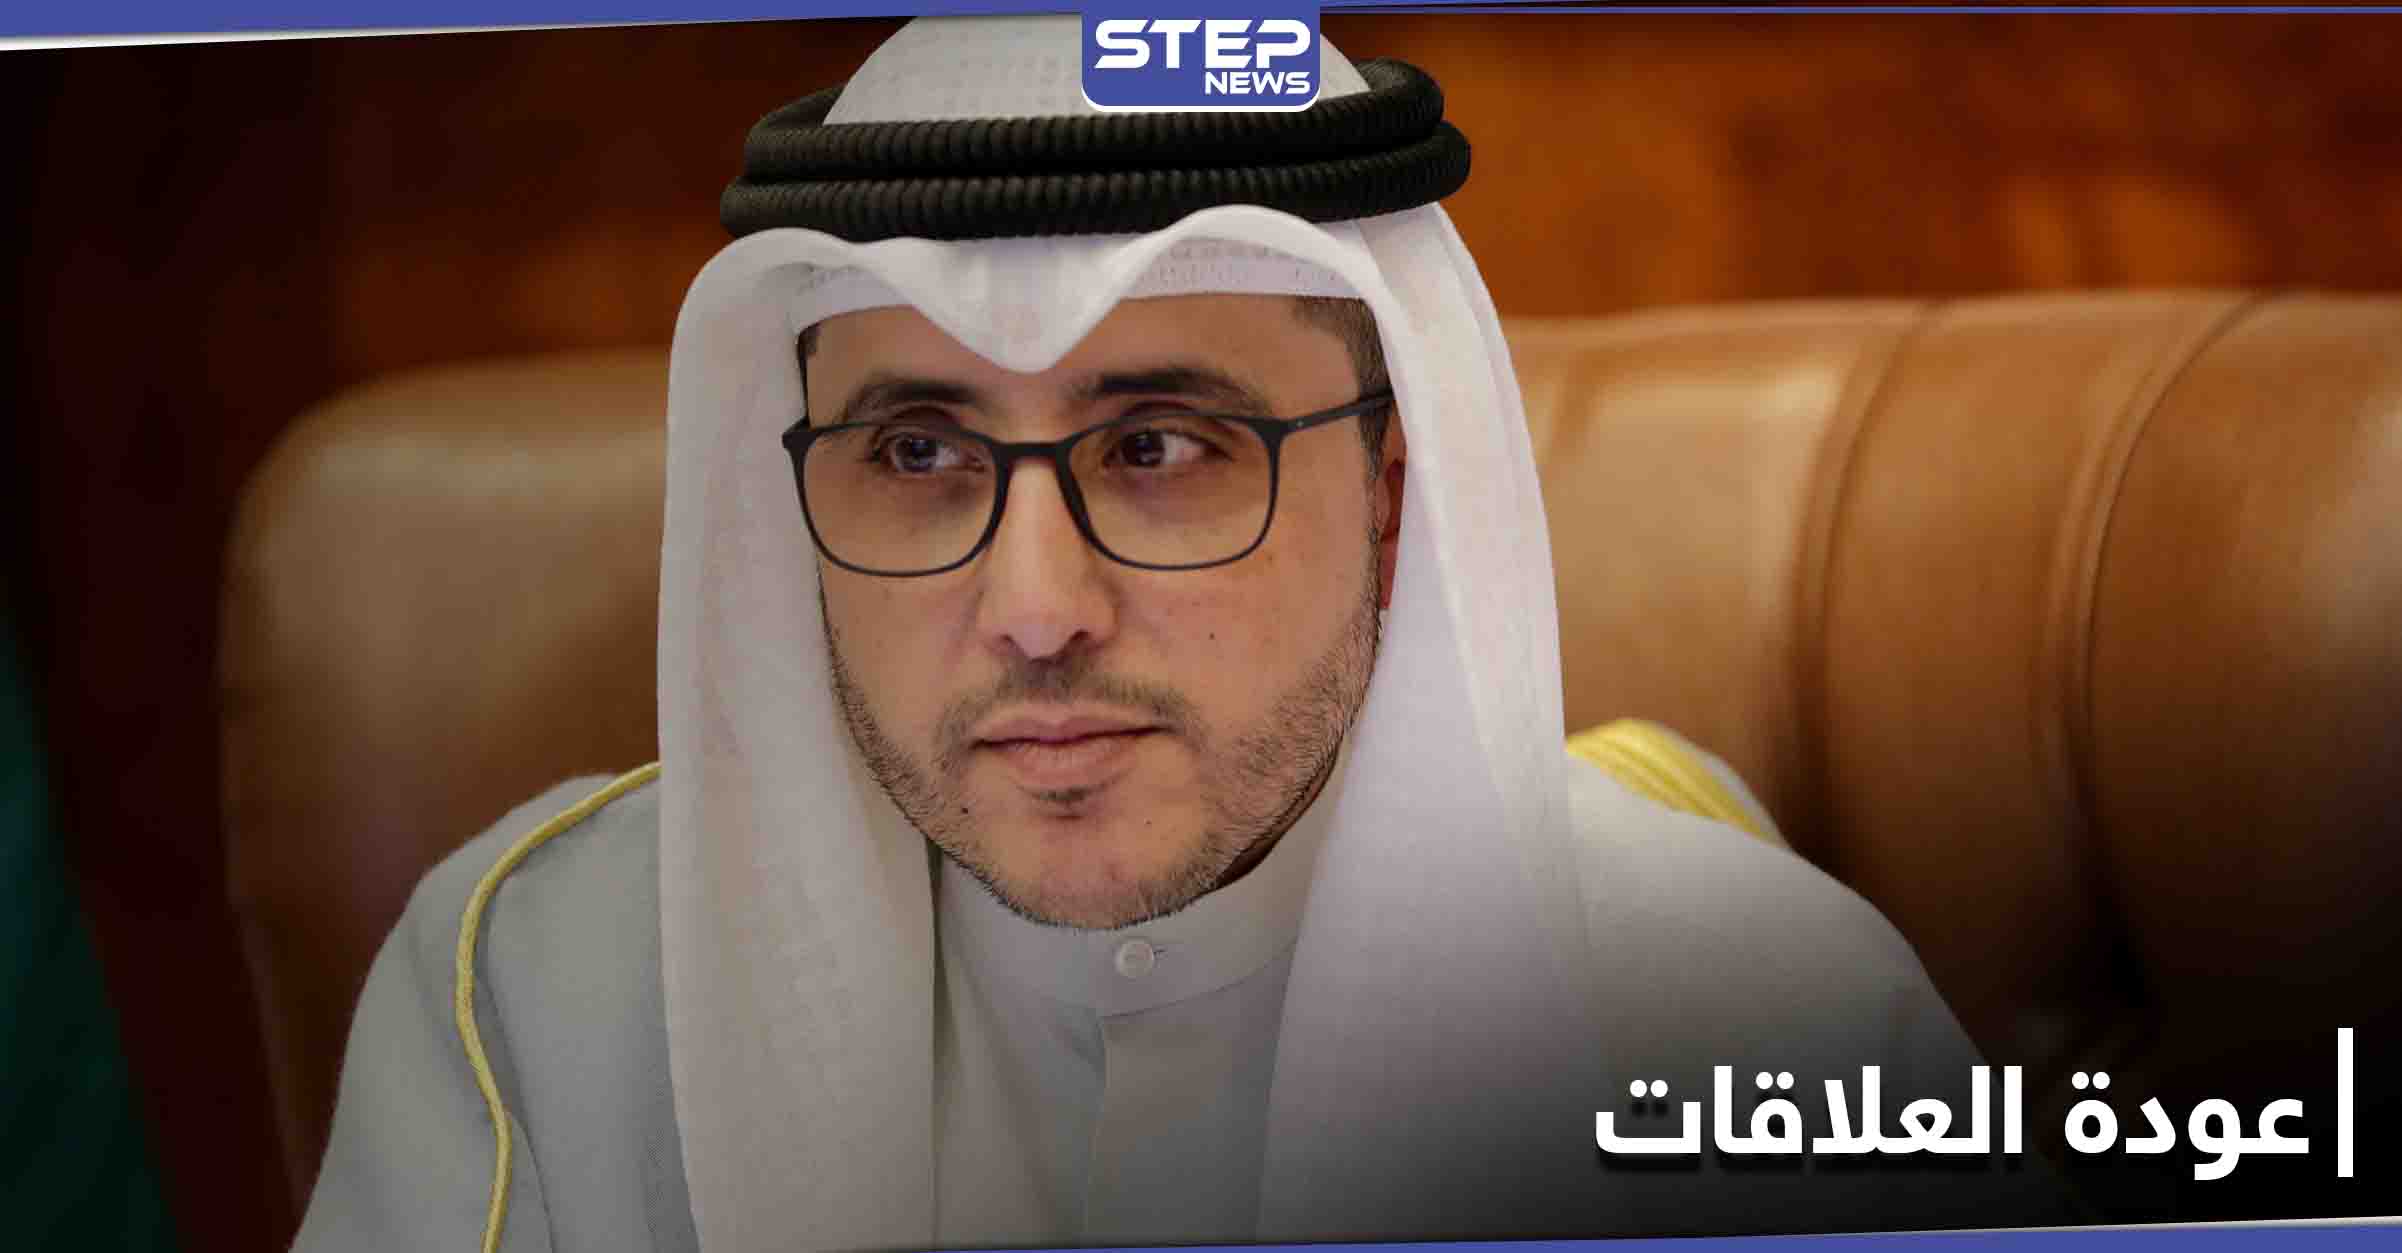 قبيل القمة الخليجية.. الكويت تعلن إنهاء الأزمة بين قطر والسعودية